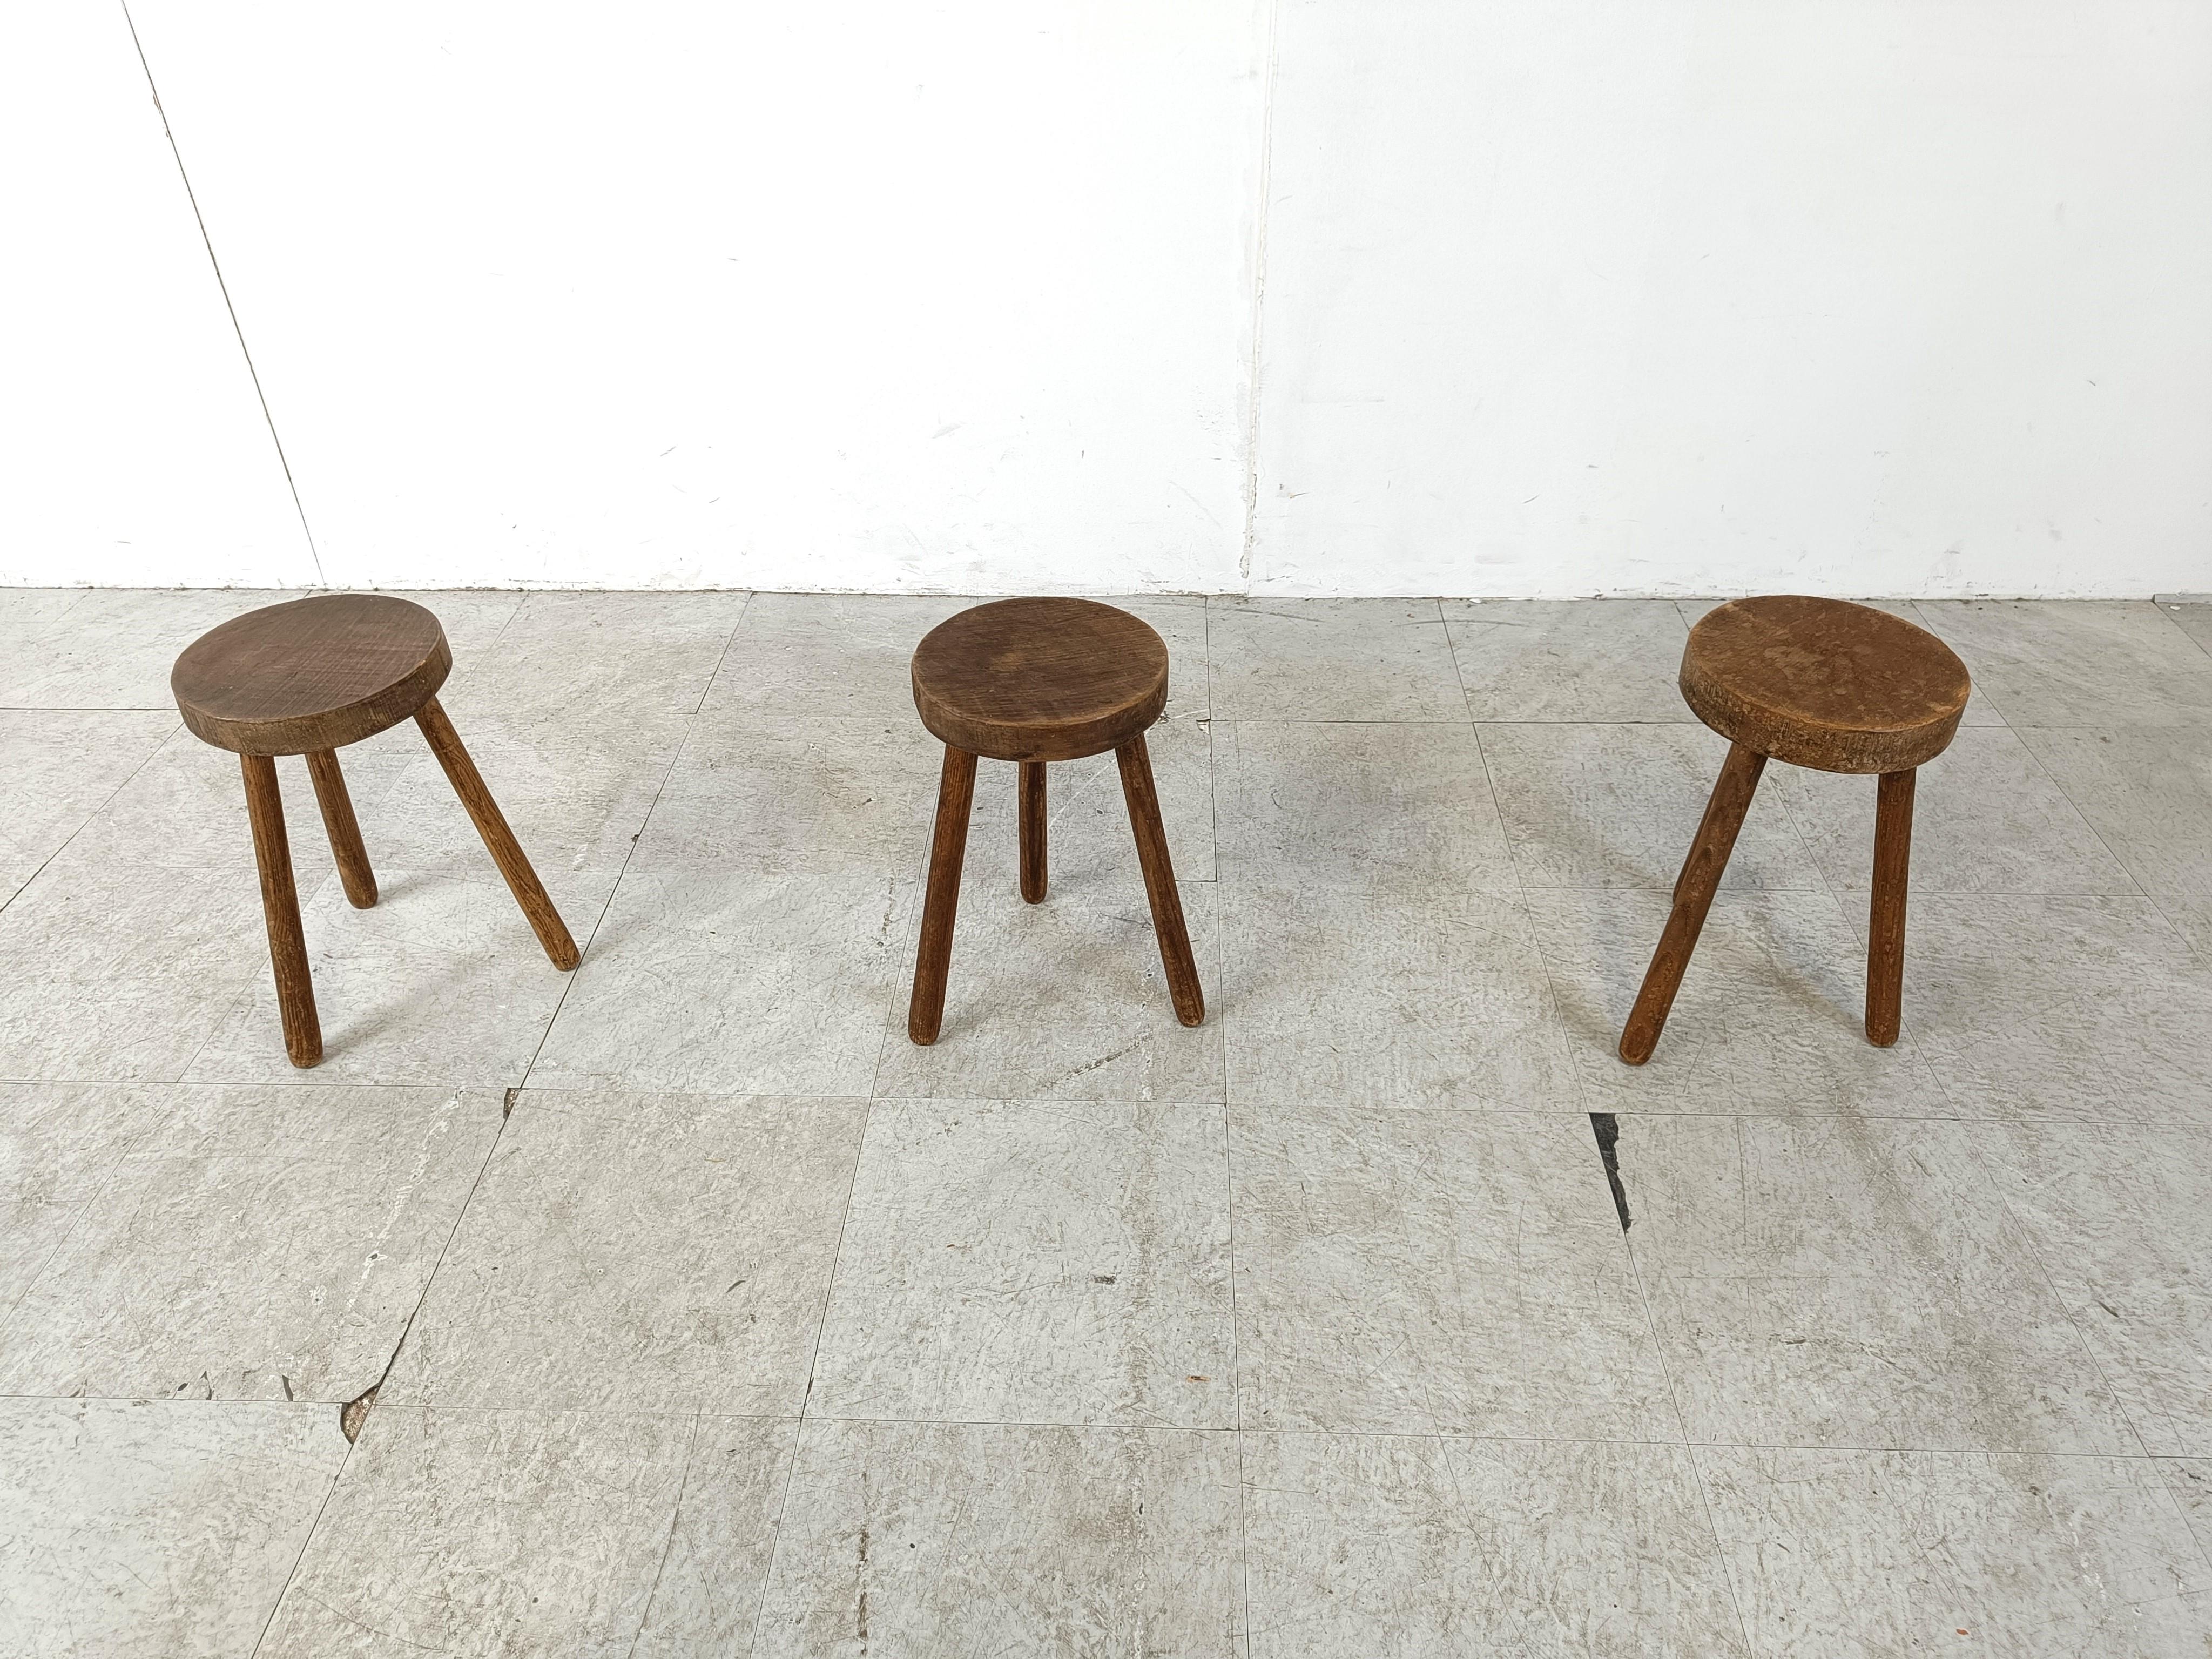 Rustic Vintage farmer stools, set of 3